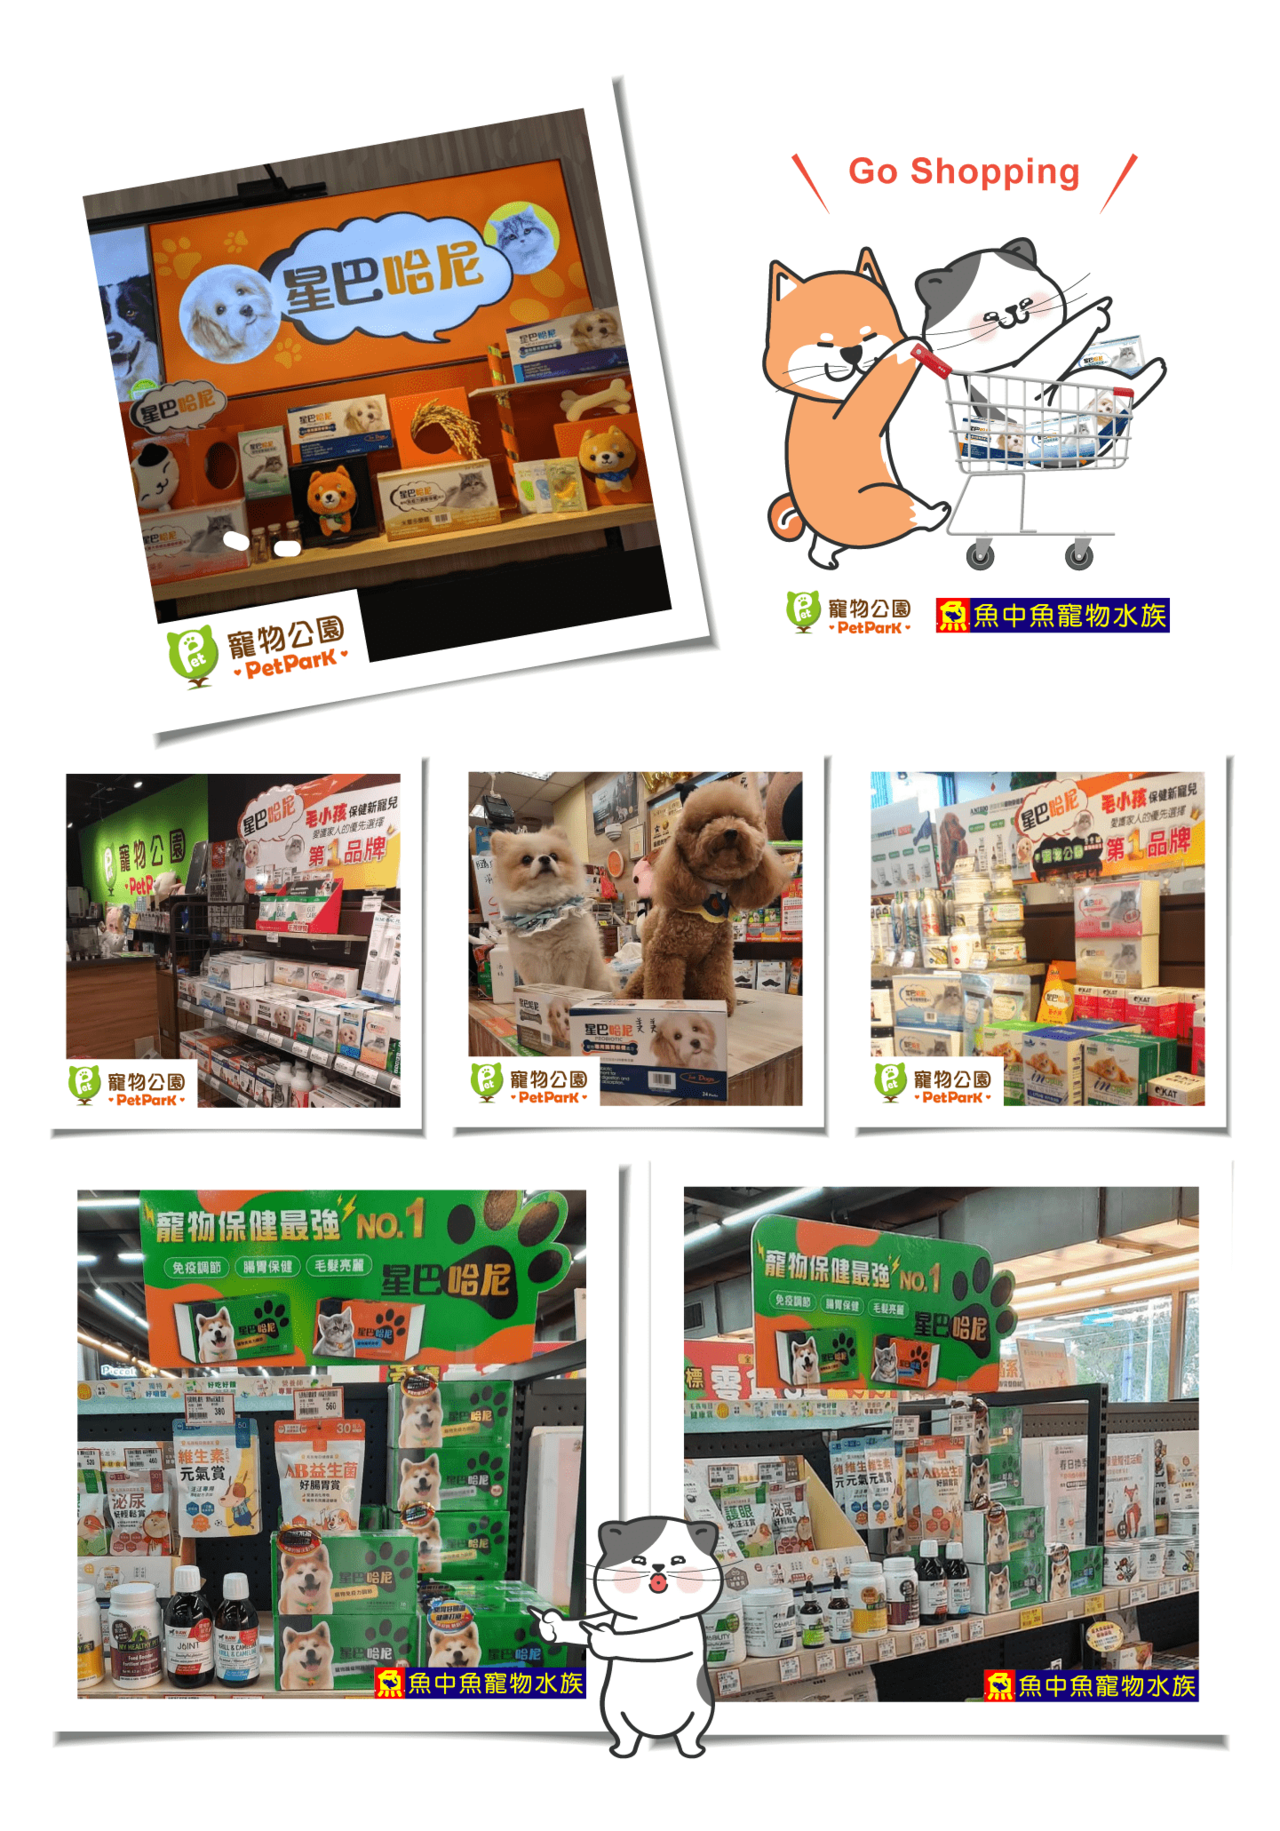 寵物公園 & 魚中魚實體商店可購買星巴哈尼系列全商品